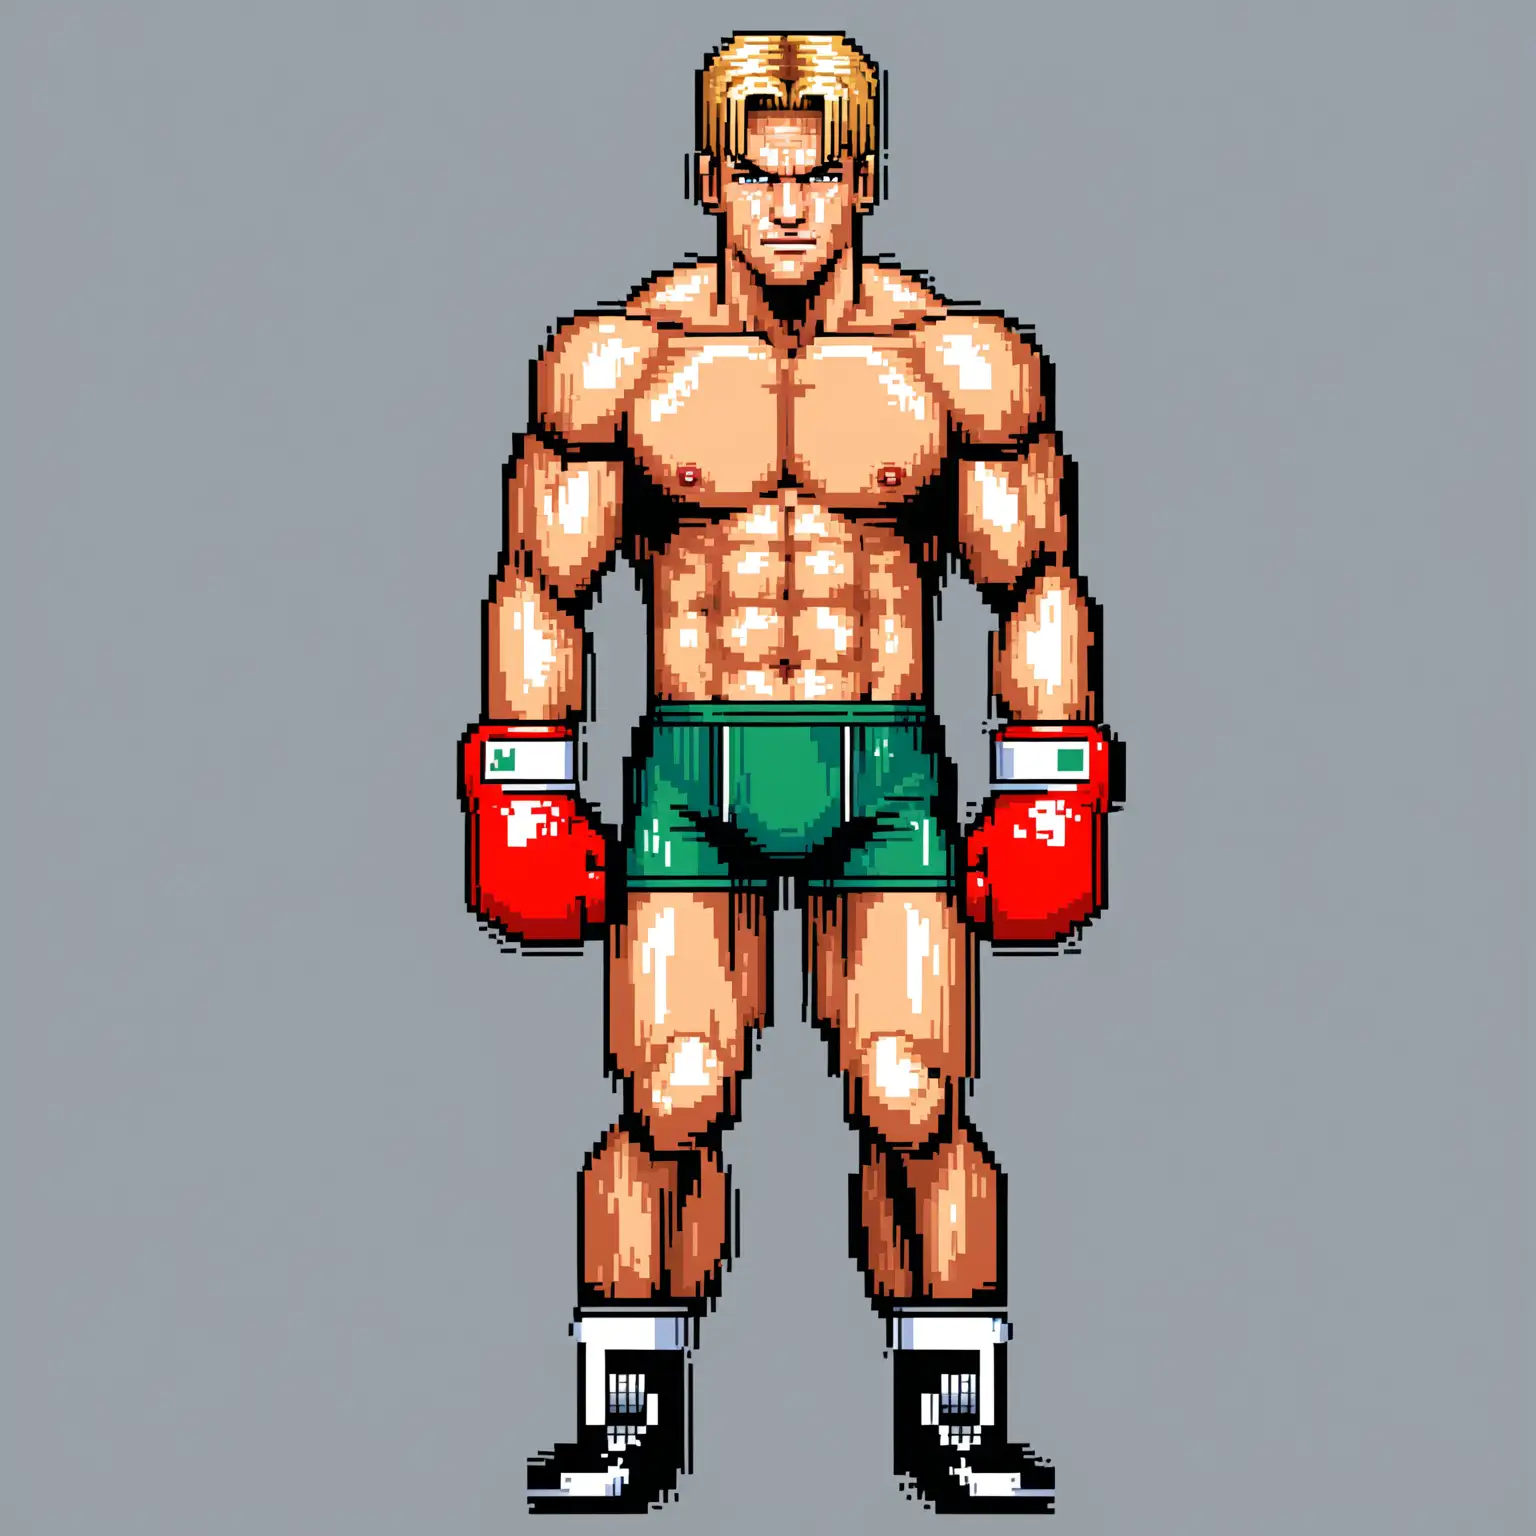 dans un style pixel art de très bonne qualité :
un boxeur au trait de dolph lundgren
